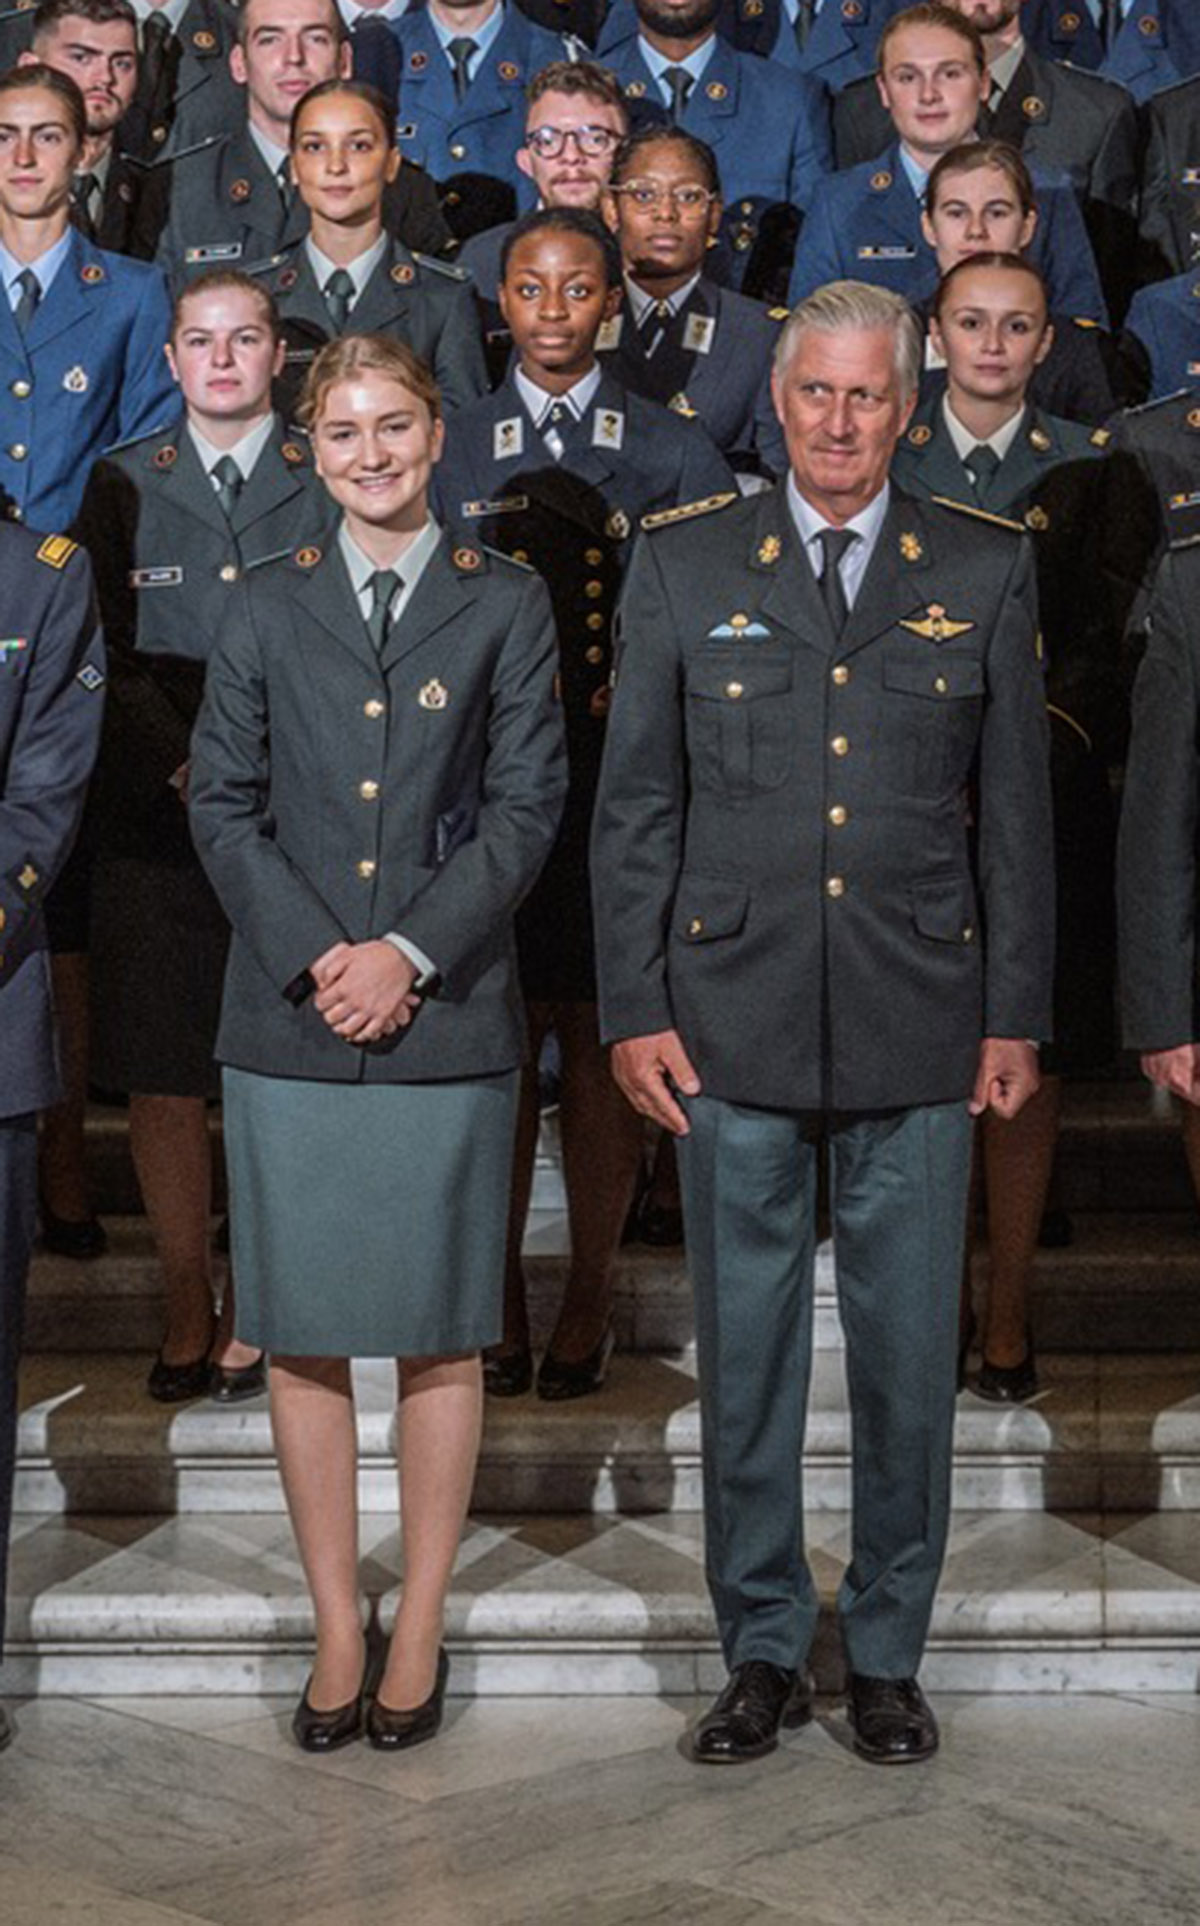 elisabeth de belgica y su padre, el rey felipe, vestidos de uniforme